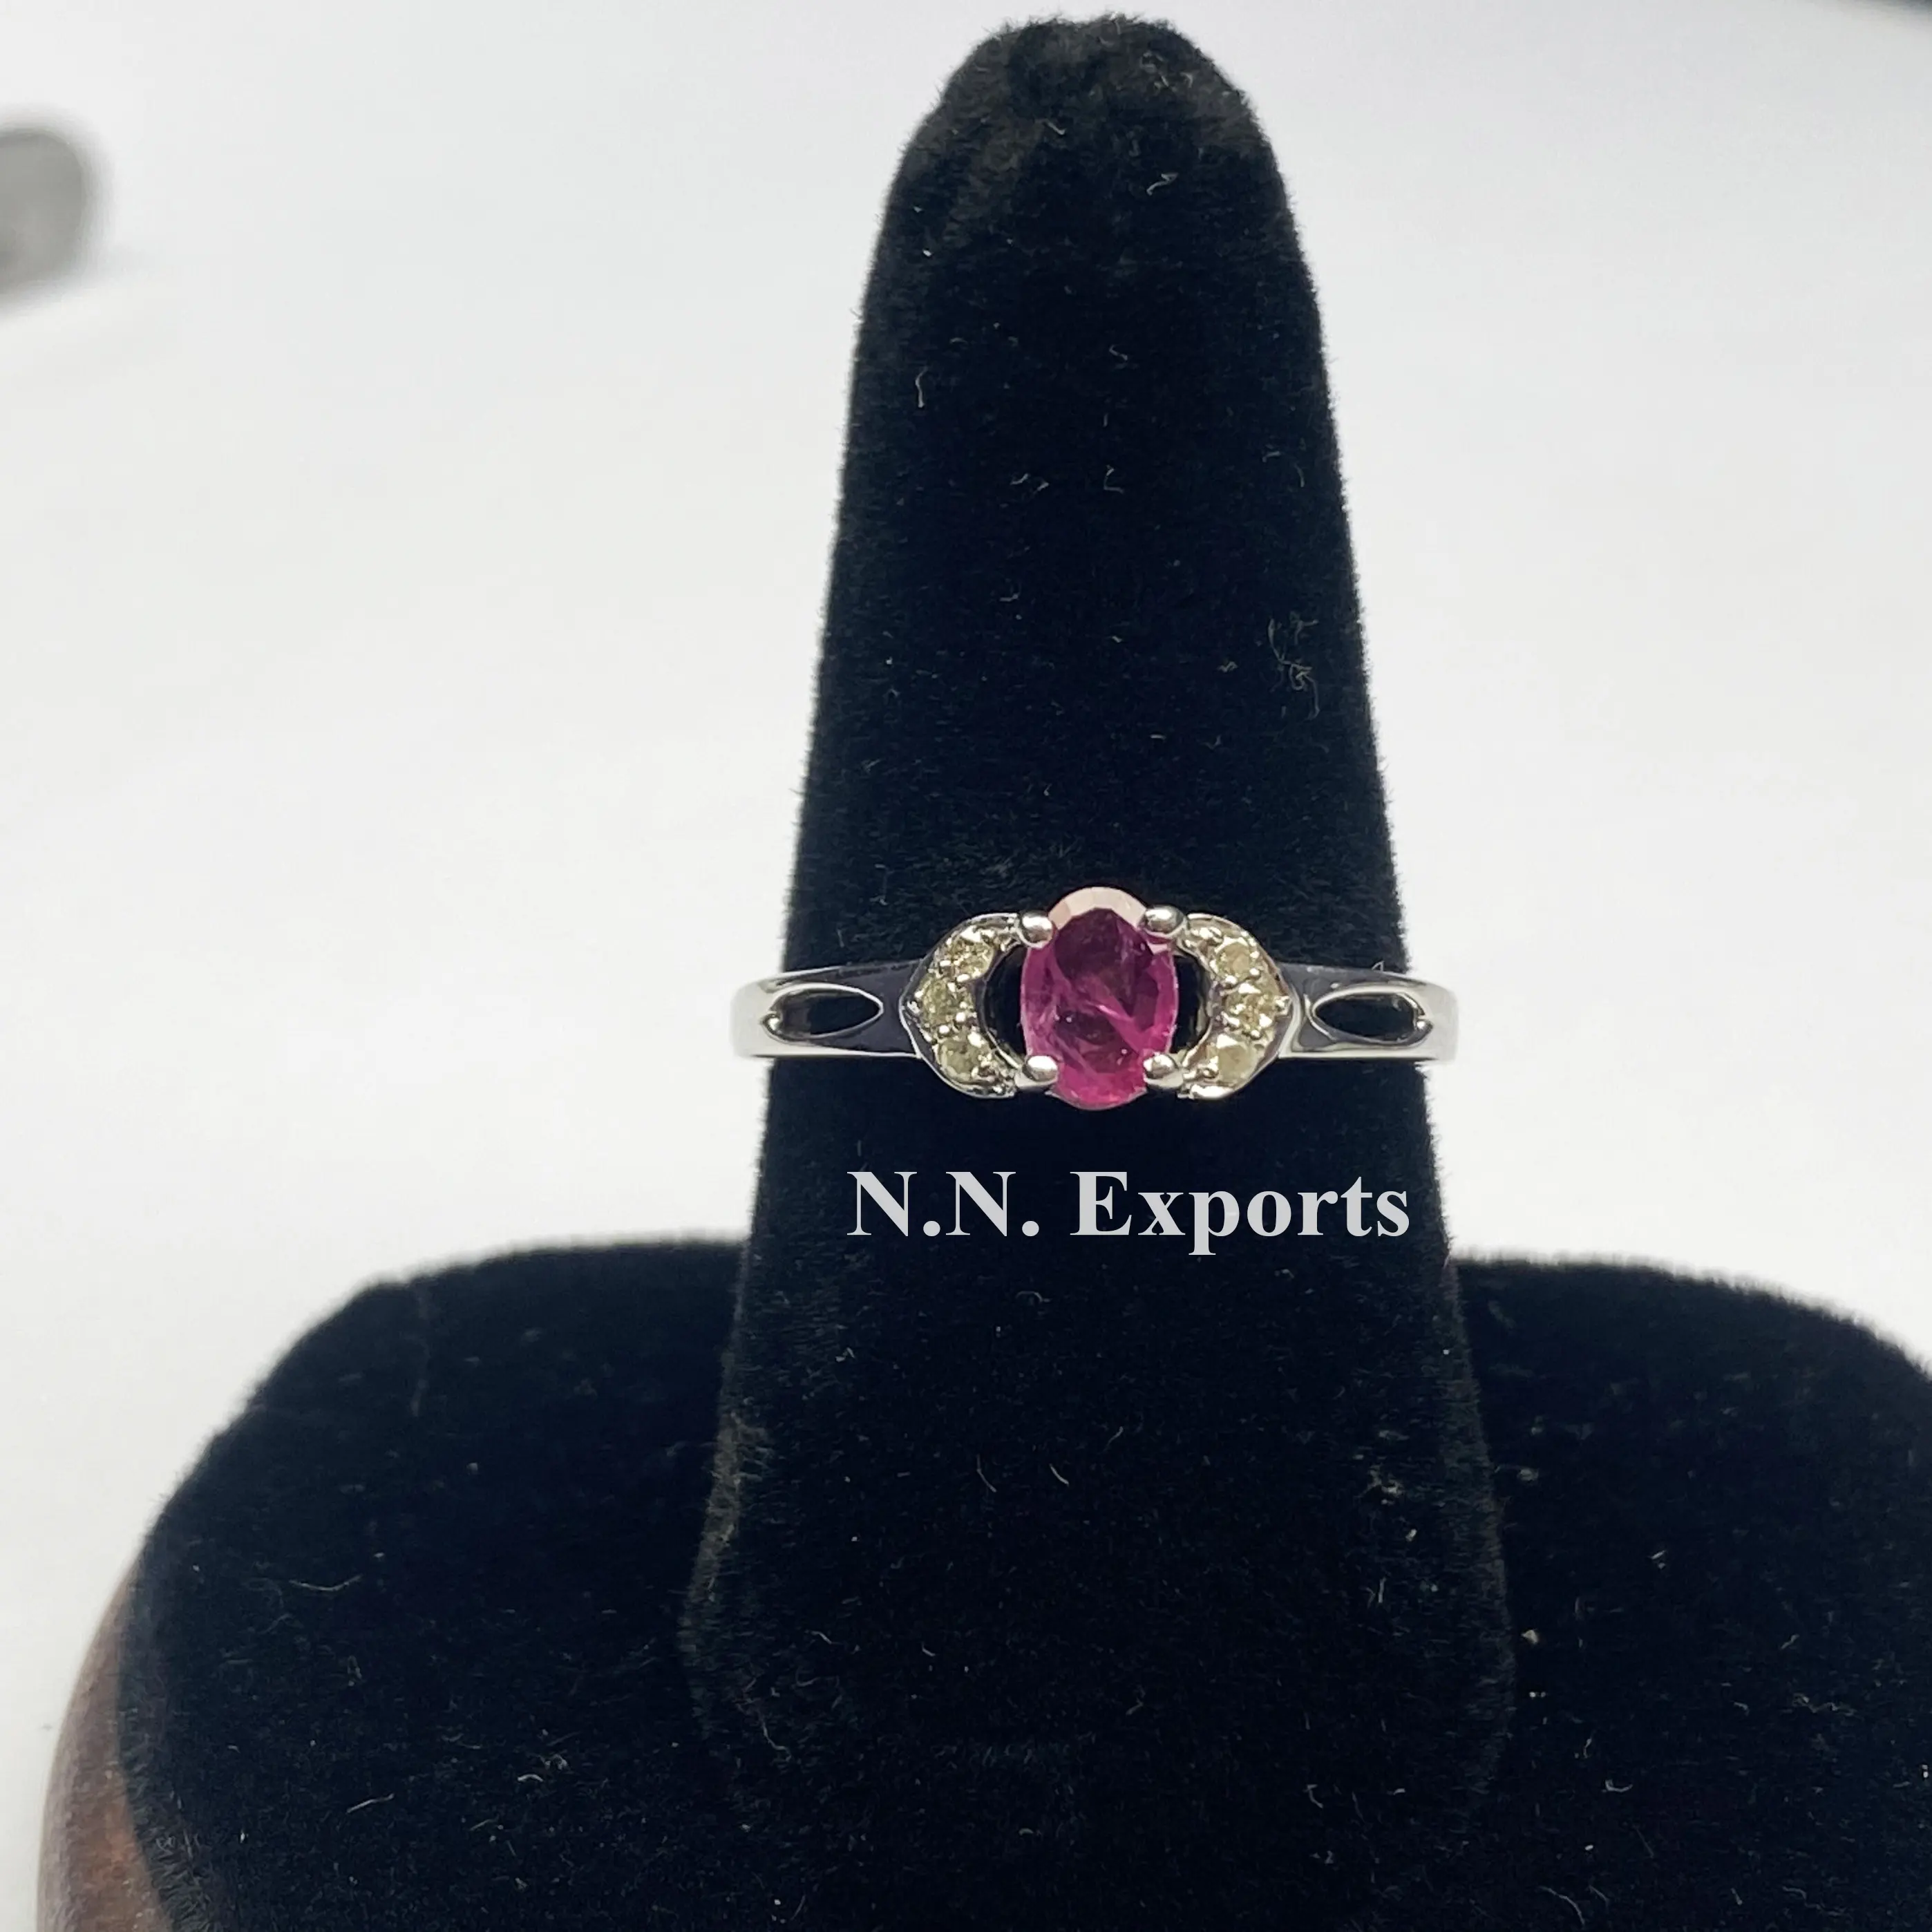 Negozio unico del produttore dei gioielli dell'anello del diamante e del rubino dell'argento sterlina 925 al prezzo franco fabbrica all'ingrosso ora Online